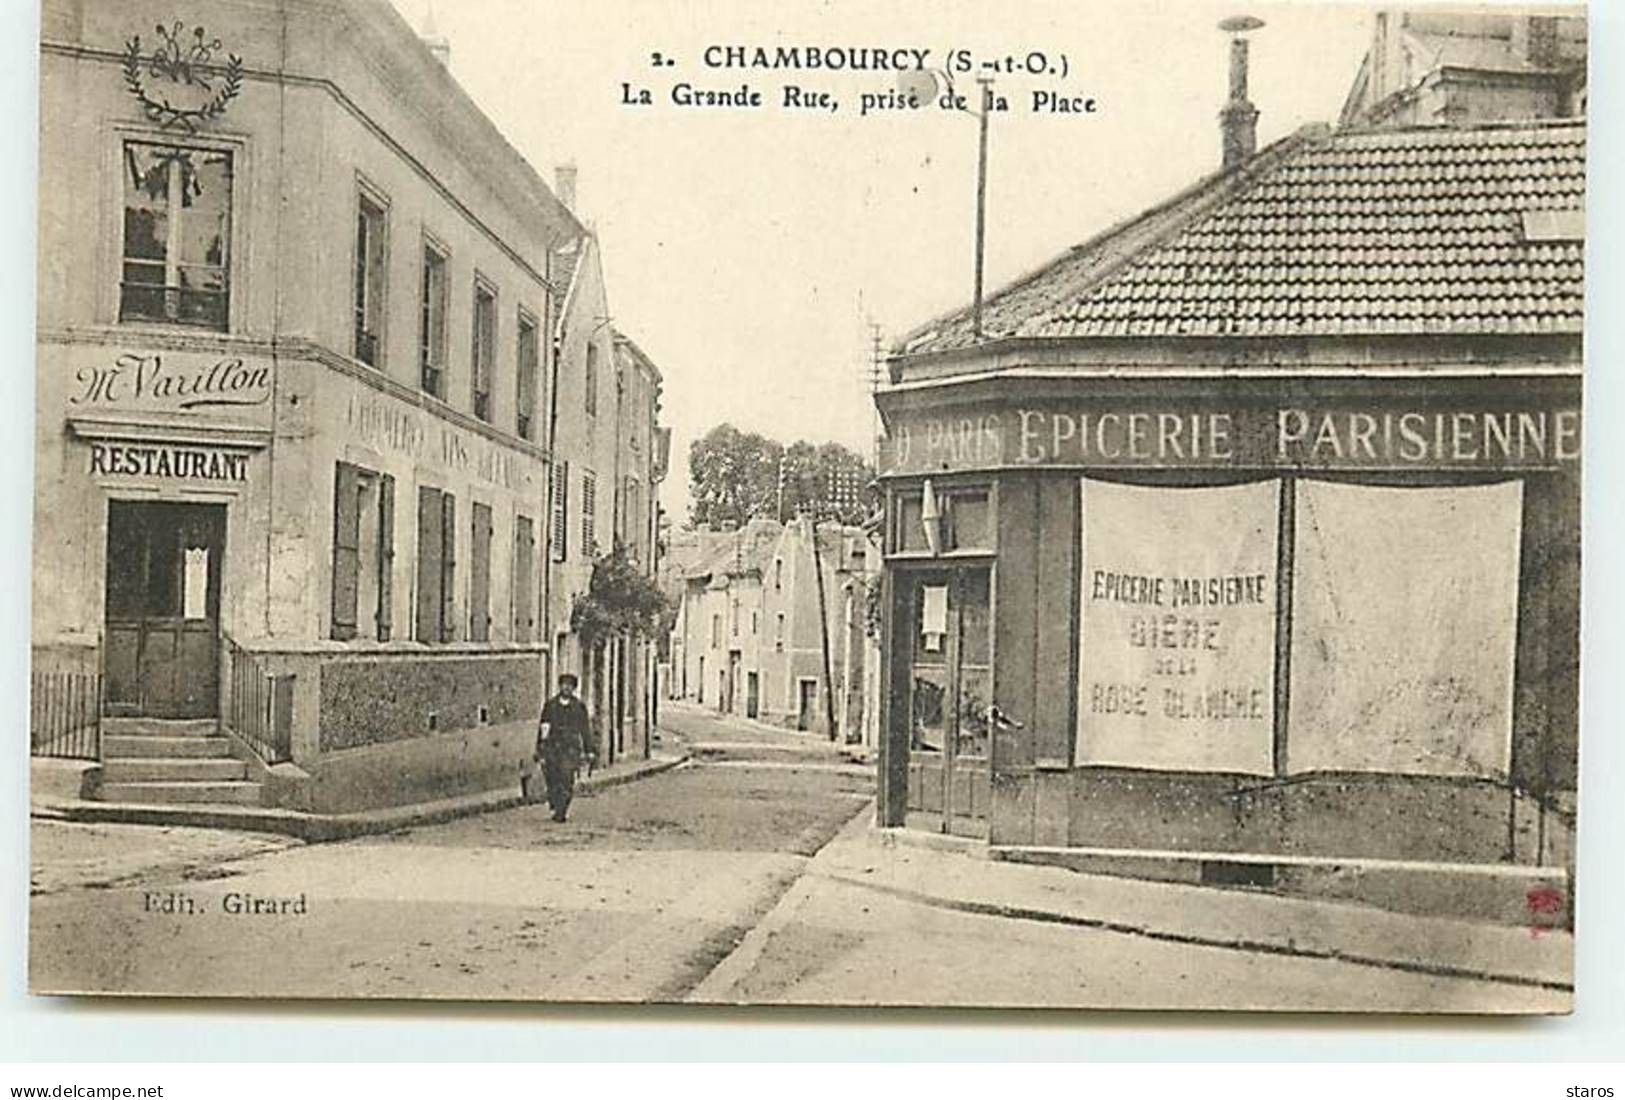 CHAMBOURCY - La Grande Rue, Prise De La Place - Epicerie Parisienne - Restaurant Maison Varillon - Chambourcy